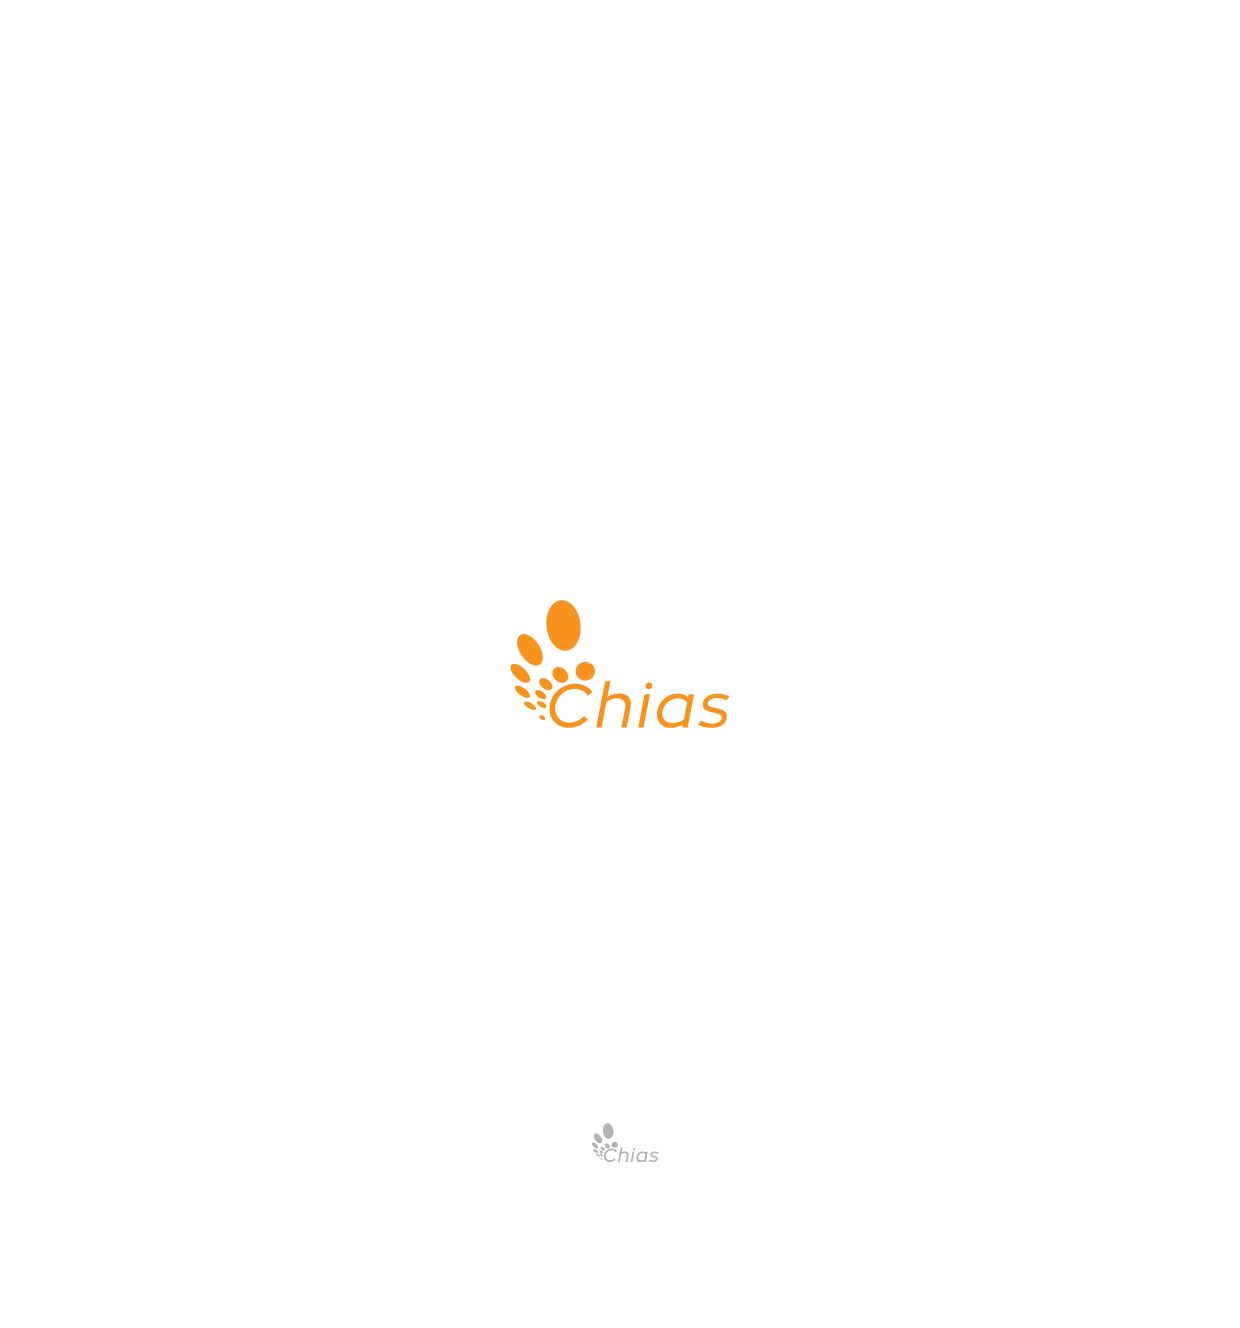 Логотип для компании Chias. Органические продукты. - дизайнер ndz_studio